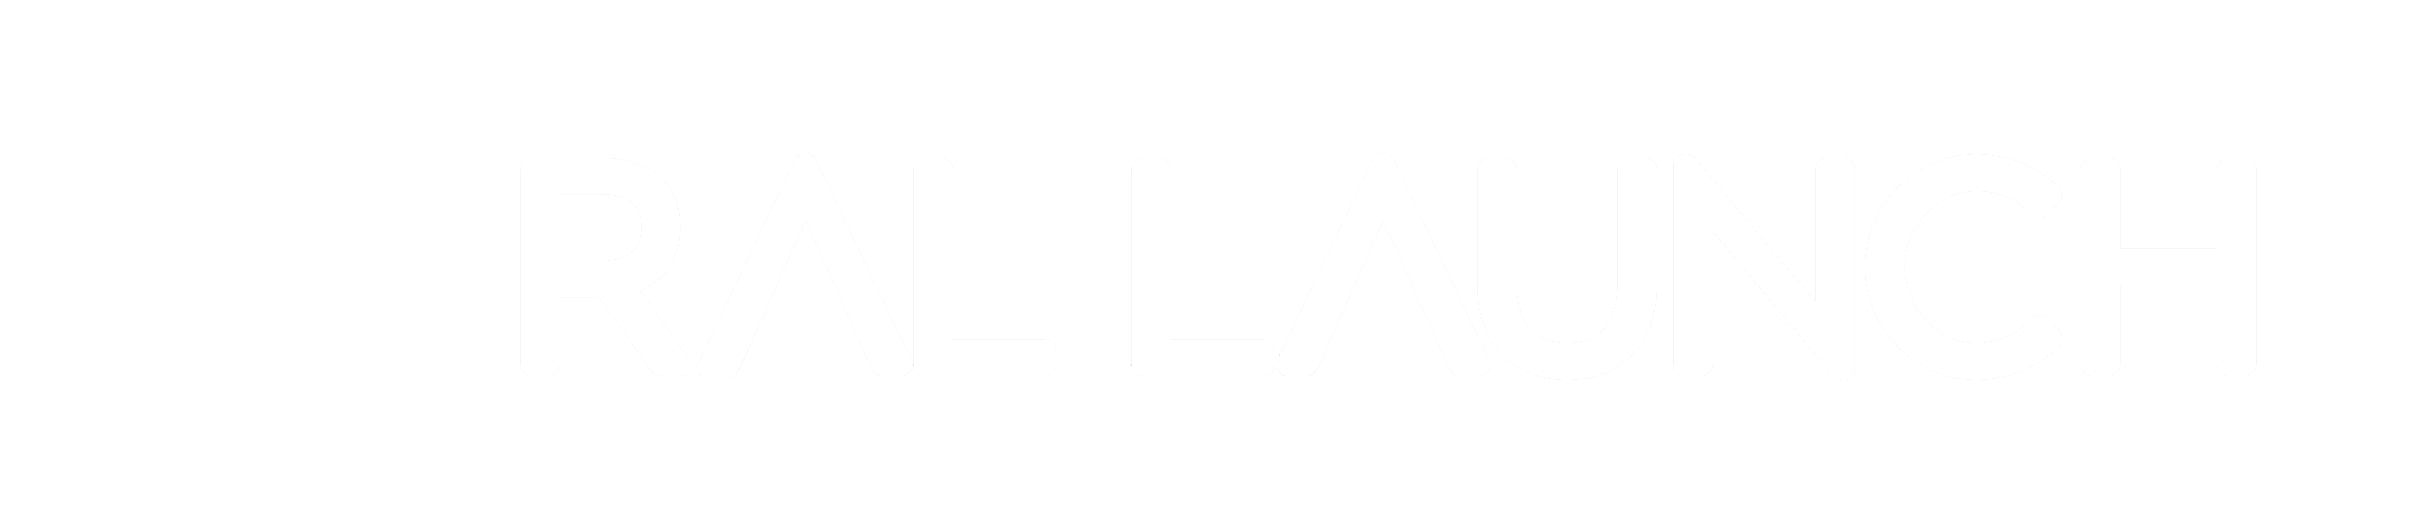 viral-launch-logo